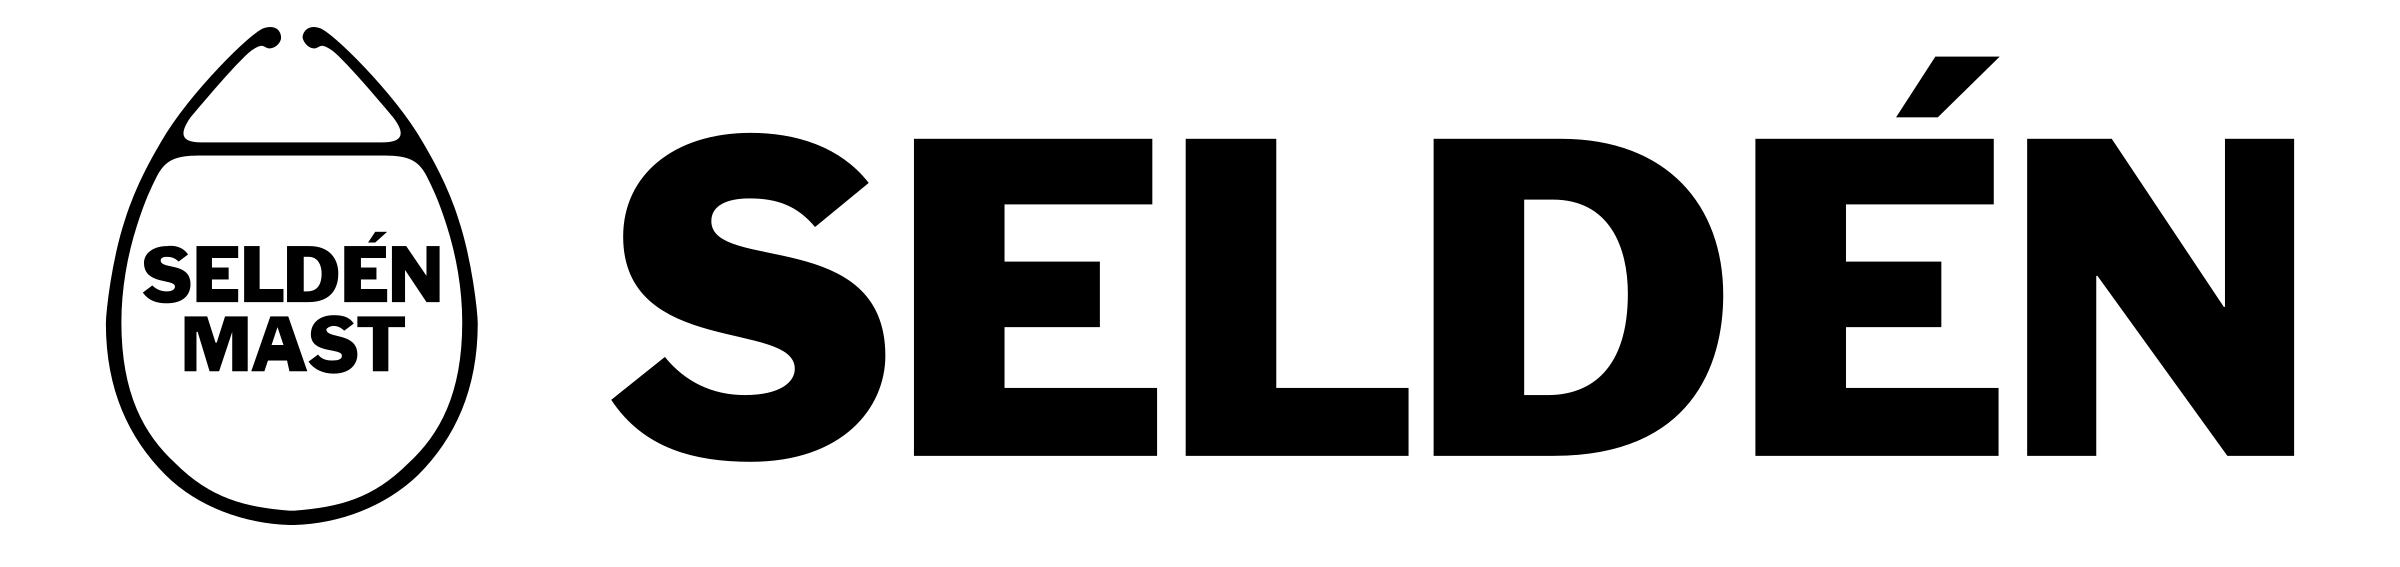 selden-mast-logo-png-transparent